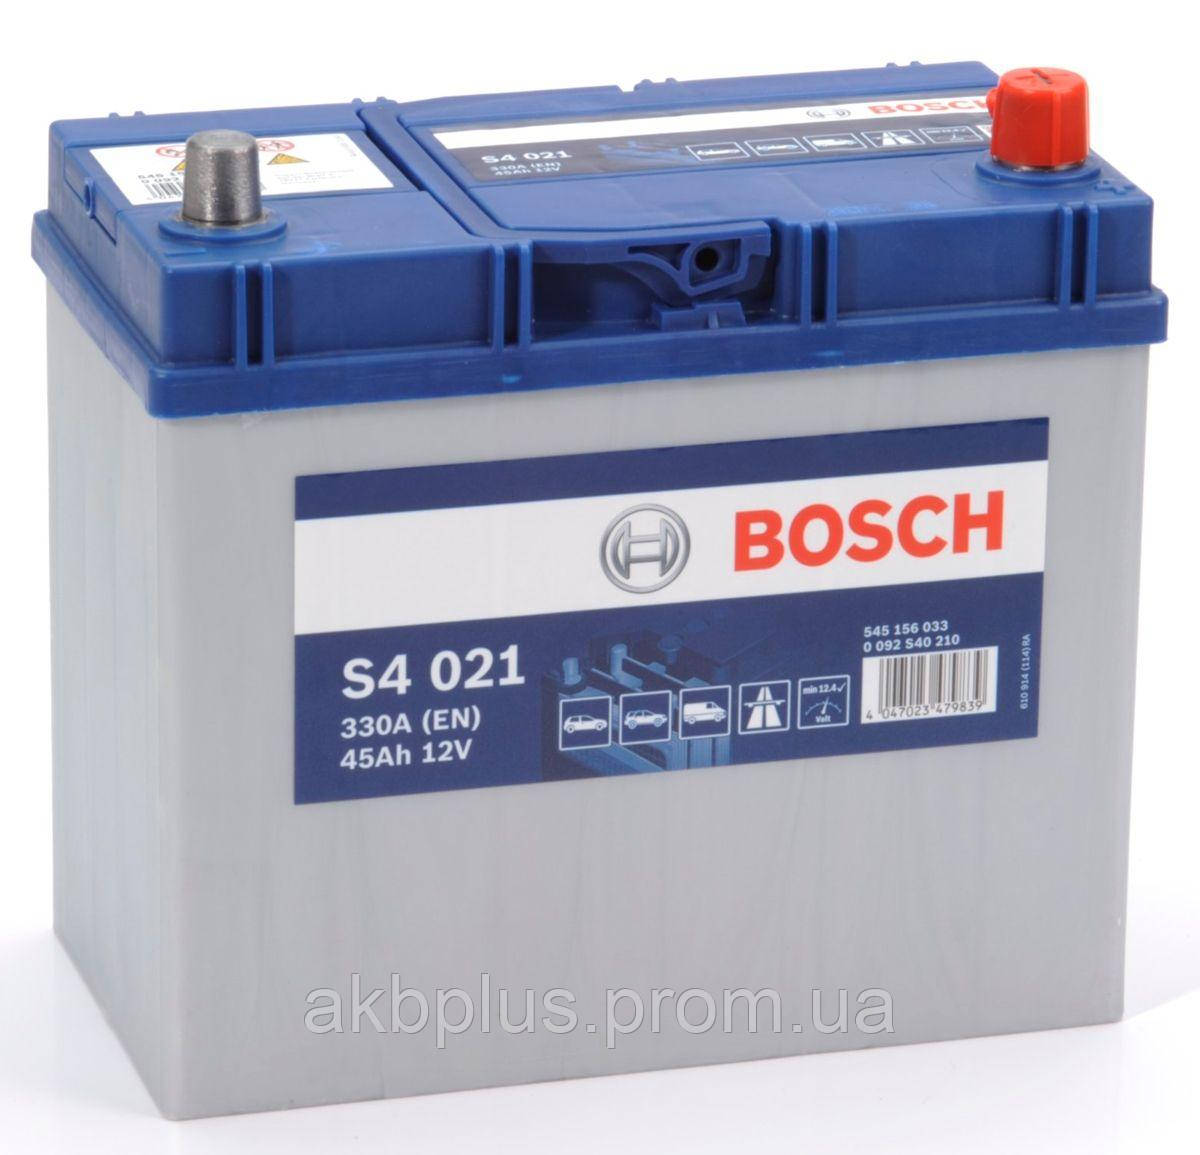 4 2 60 227. Bosch s4 022. Аккумулятор Bosch s4 024. Аккумулятор Bosch s4 021. Аккумулятор Bosch s4 s4004.